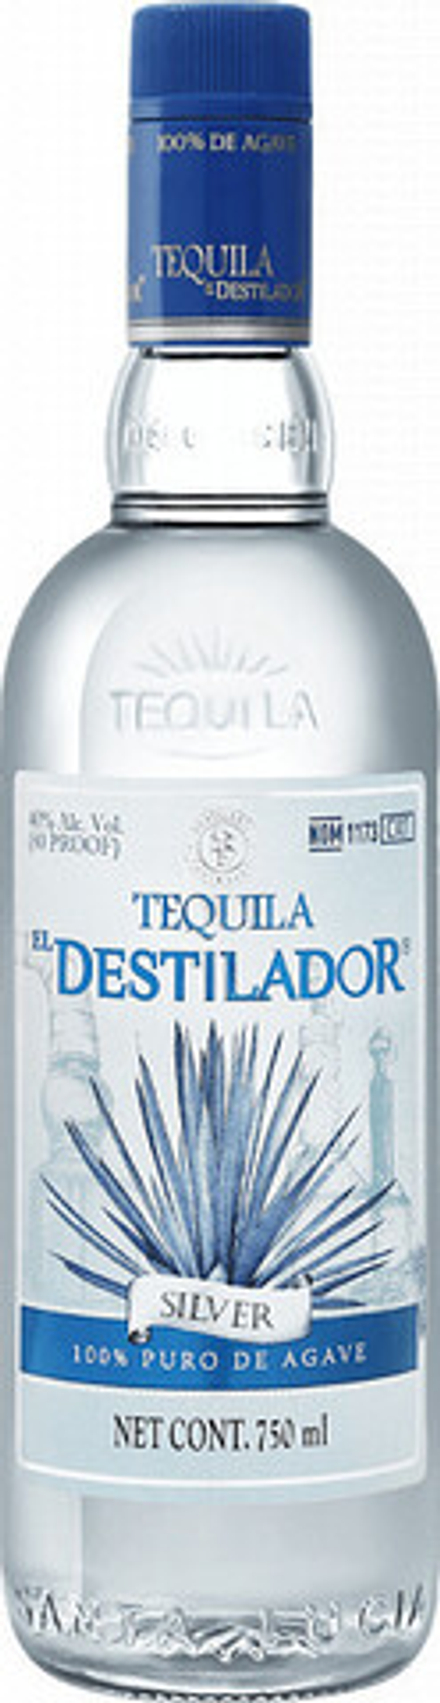 Текила El Destilador Clasico Silver, 0.75 л